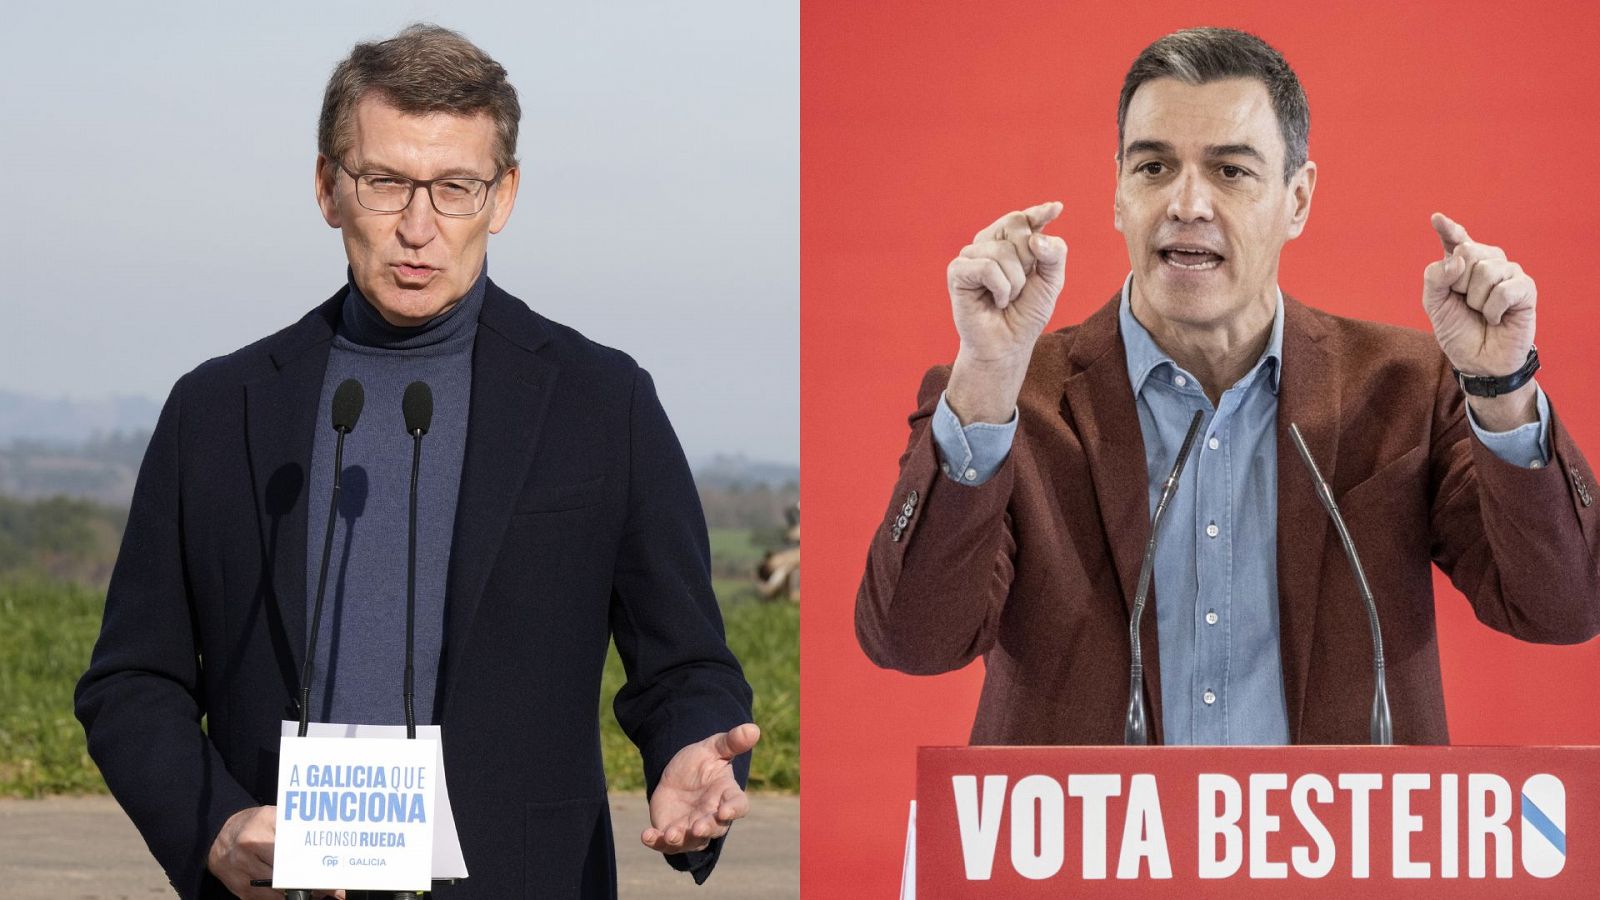 Elecciones: Feijóo y Sánchez se lanzan reproches en la campaña gallega